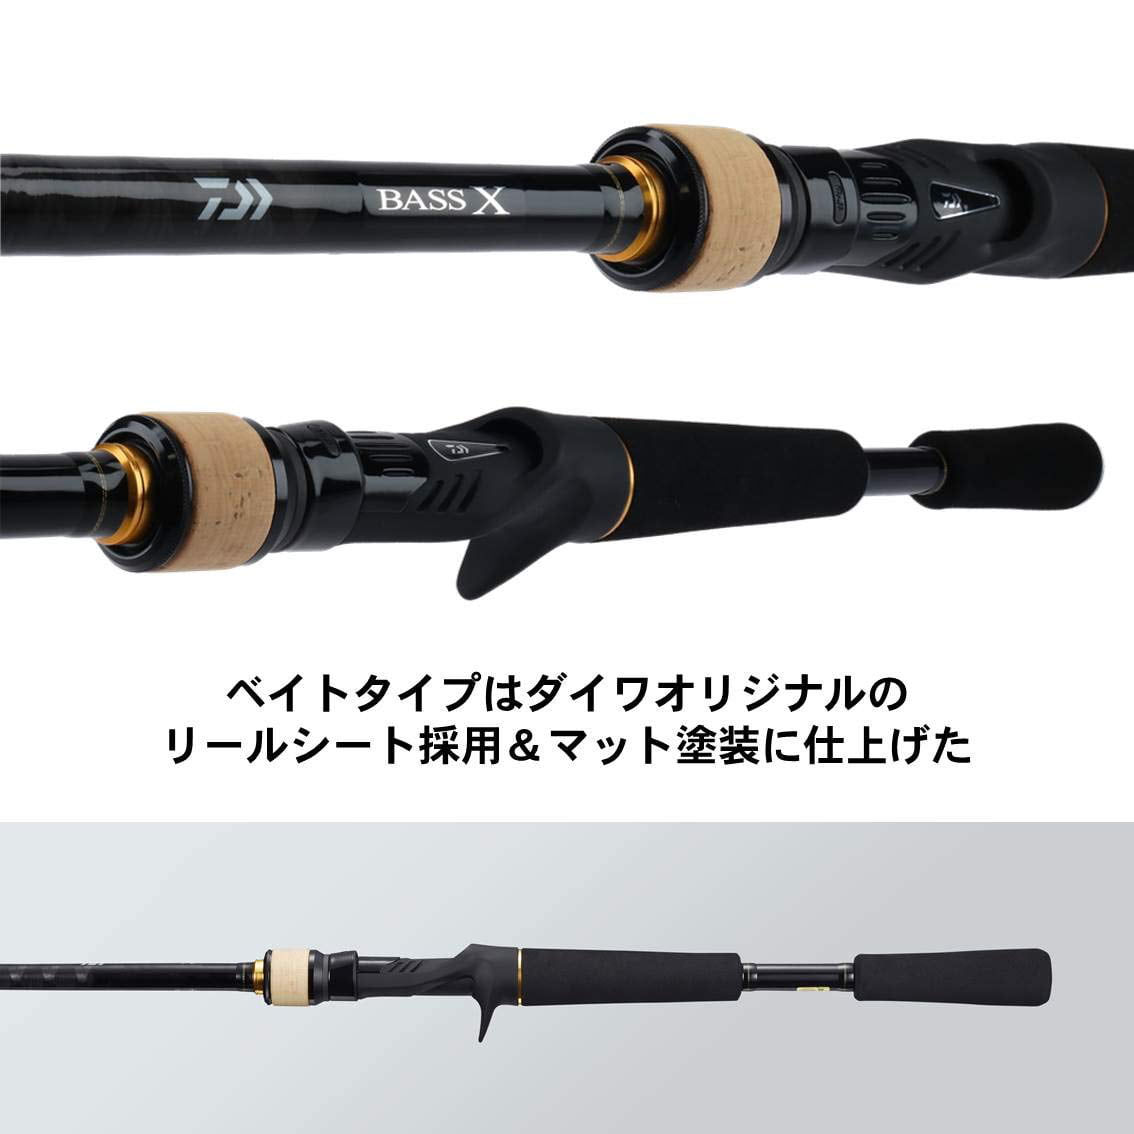 DAIWA Bass Rod Bass X / Y 722HB / Y Fishing Rod 